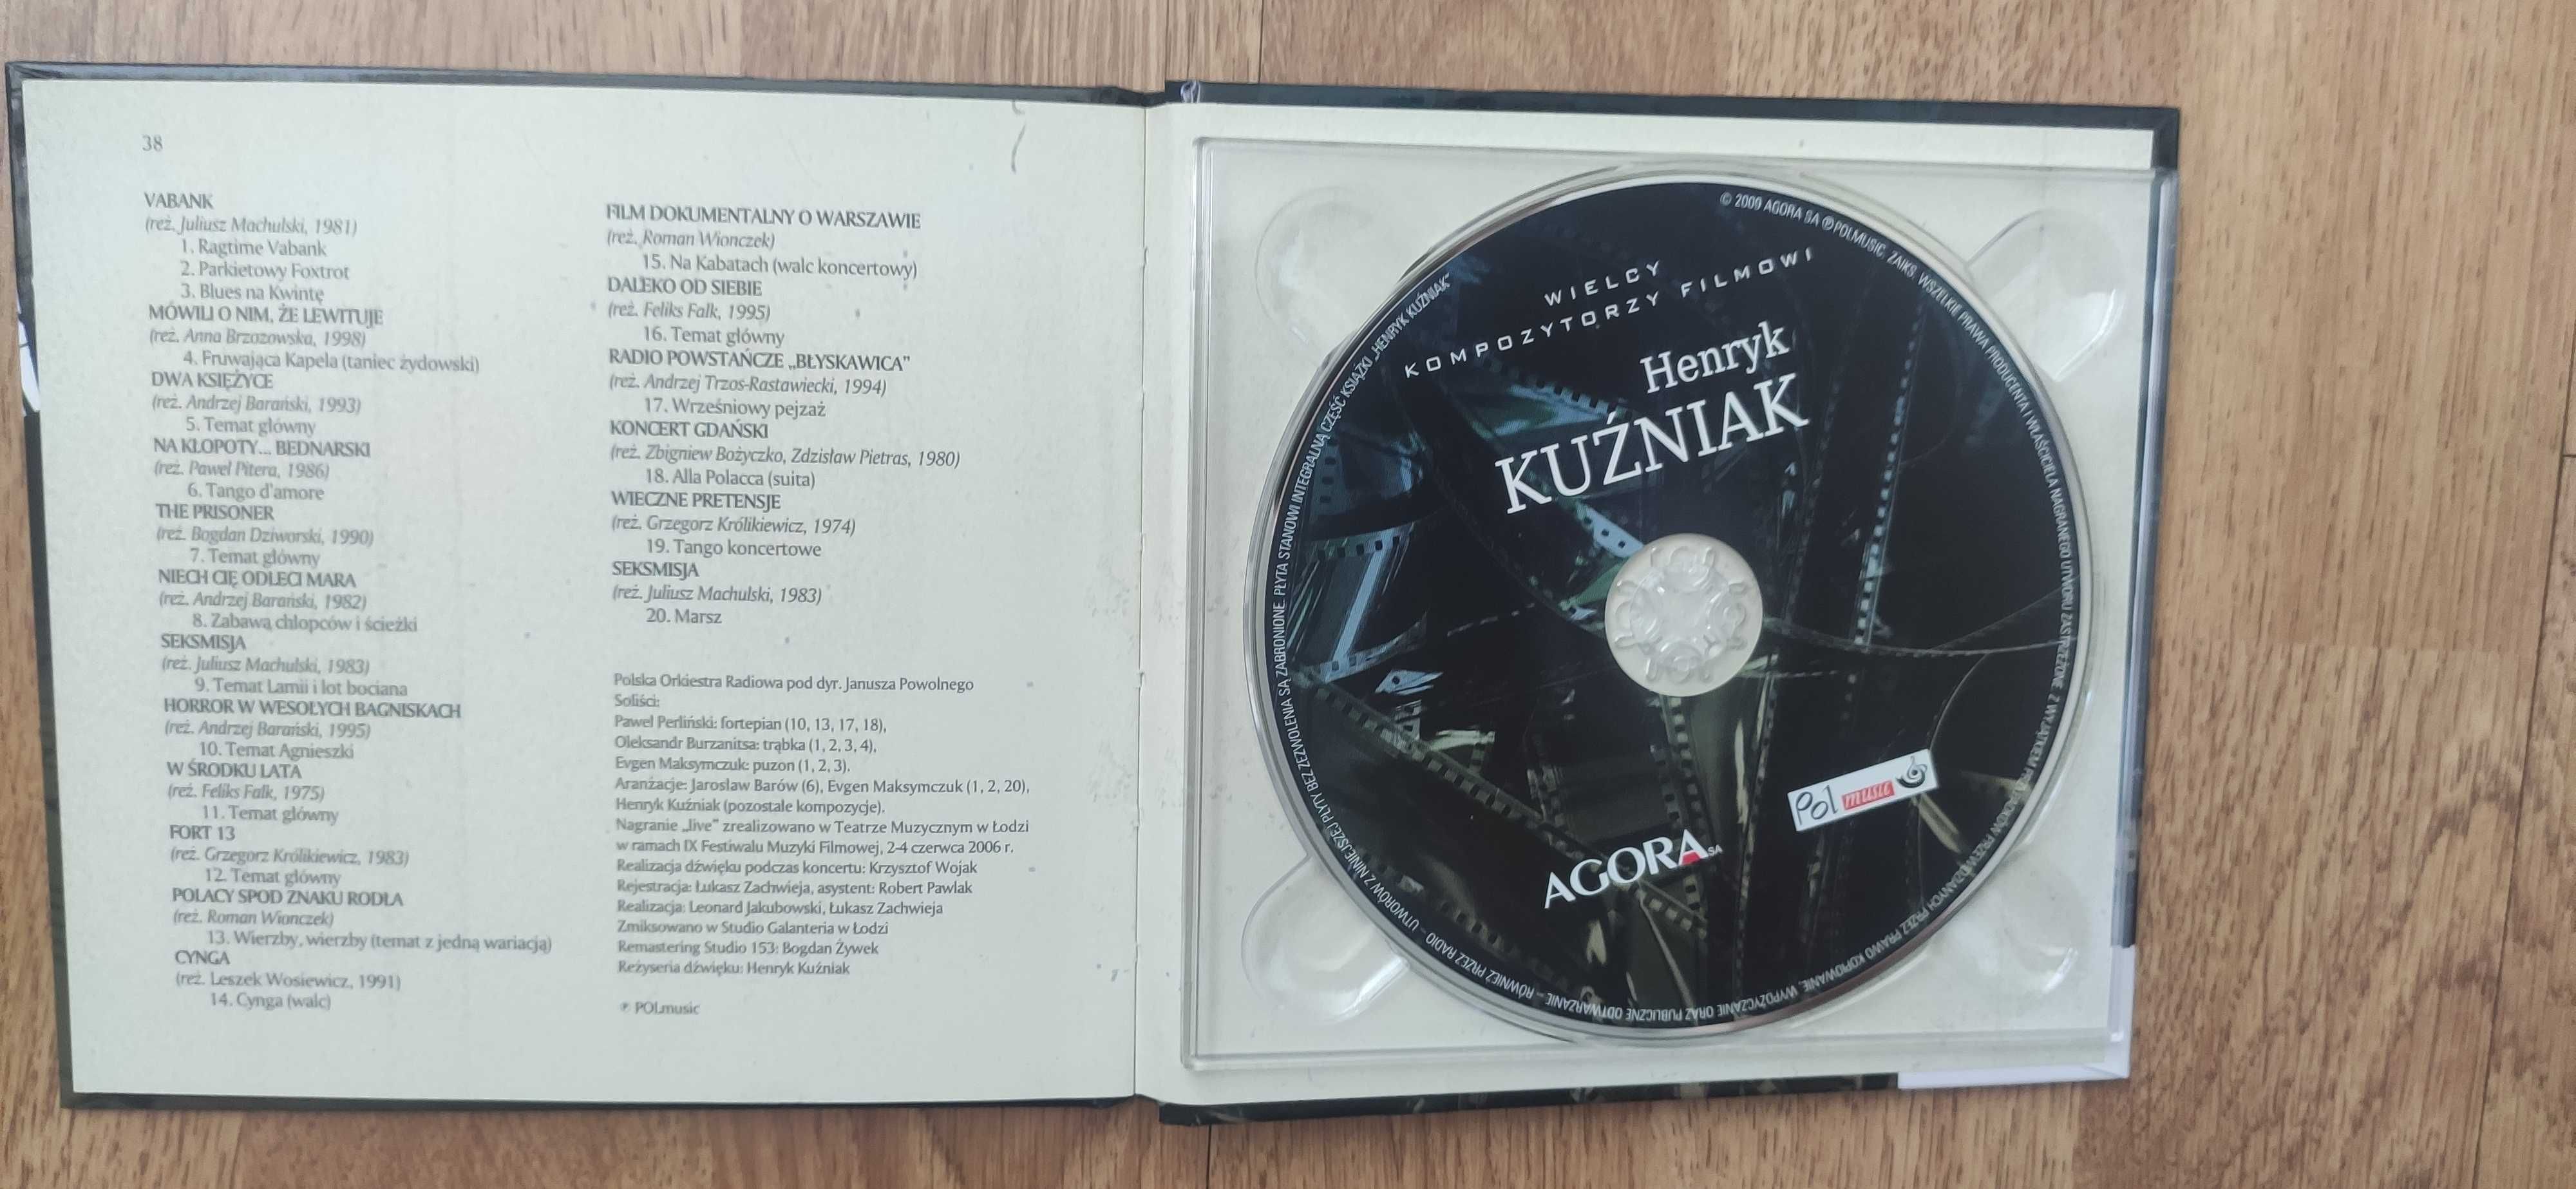 Sprzedam płytę Henryka Kuzniaka z serii Wielcy kompozytorzy filmowi